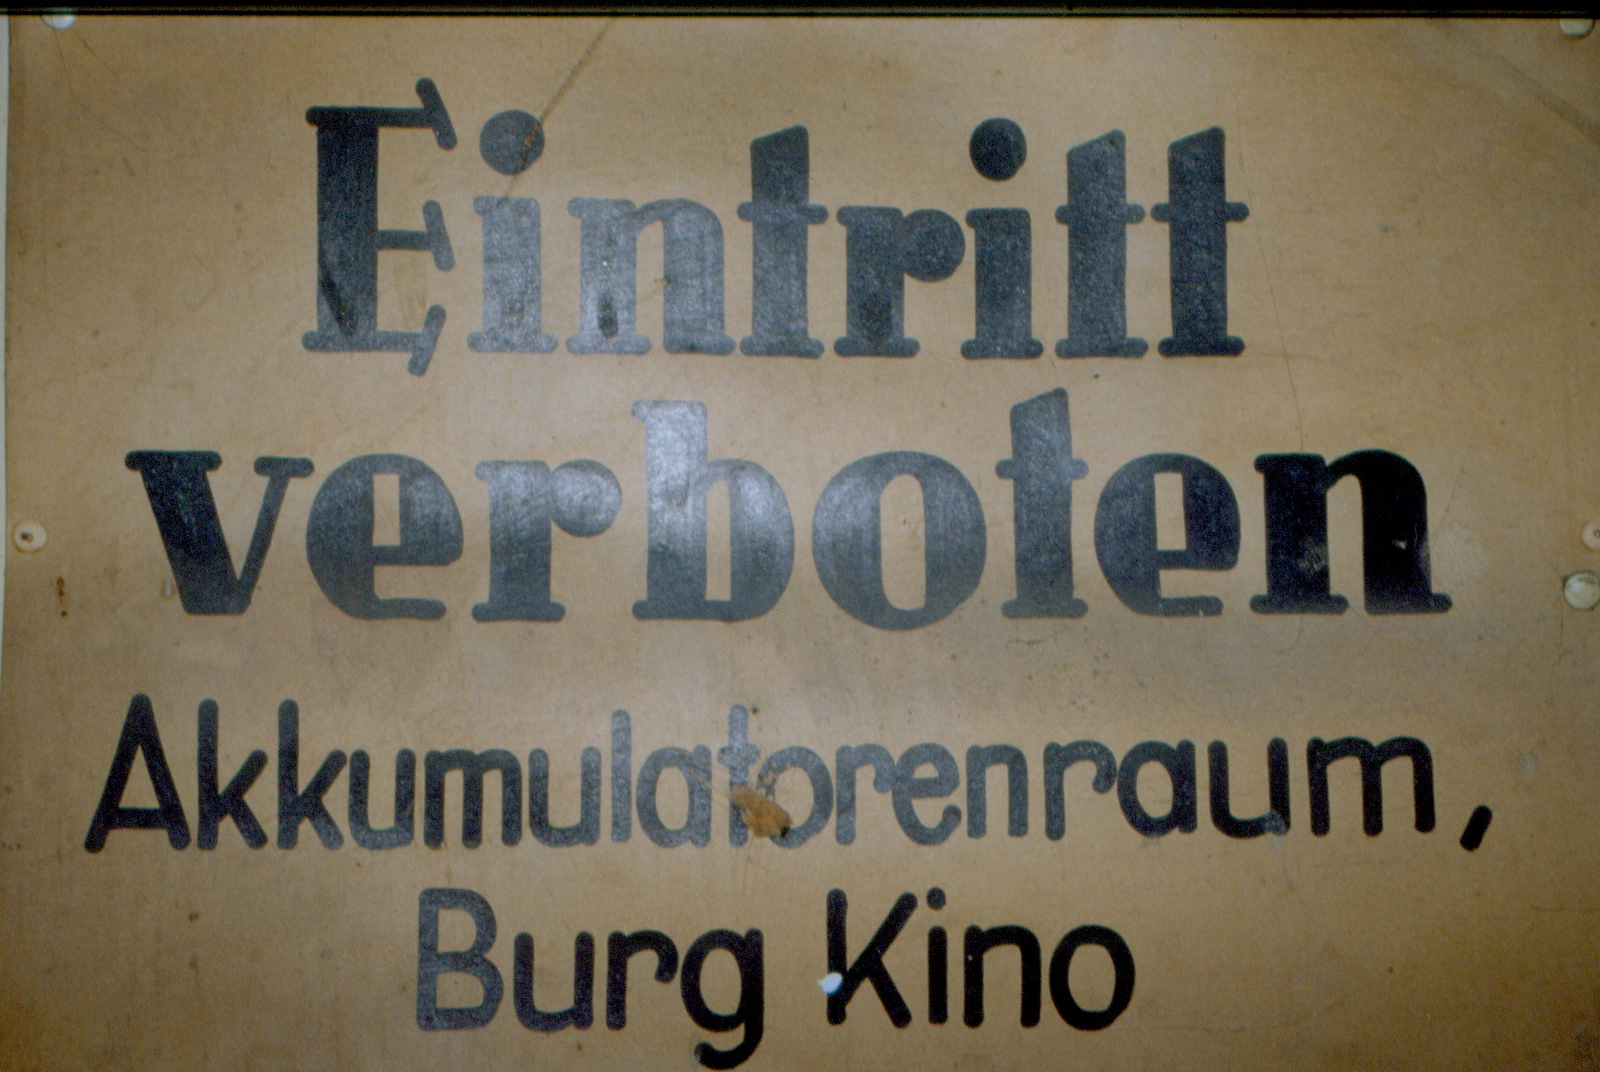 Burgkino Wien, 1989